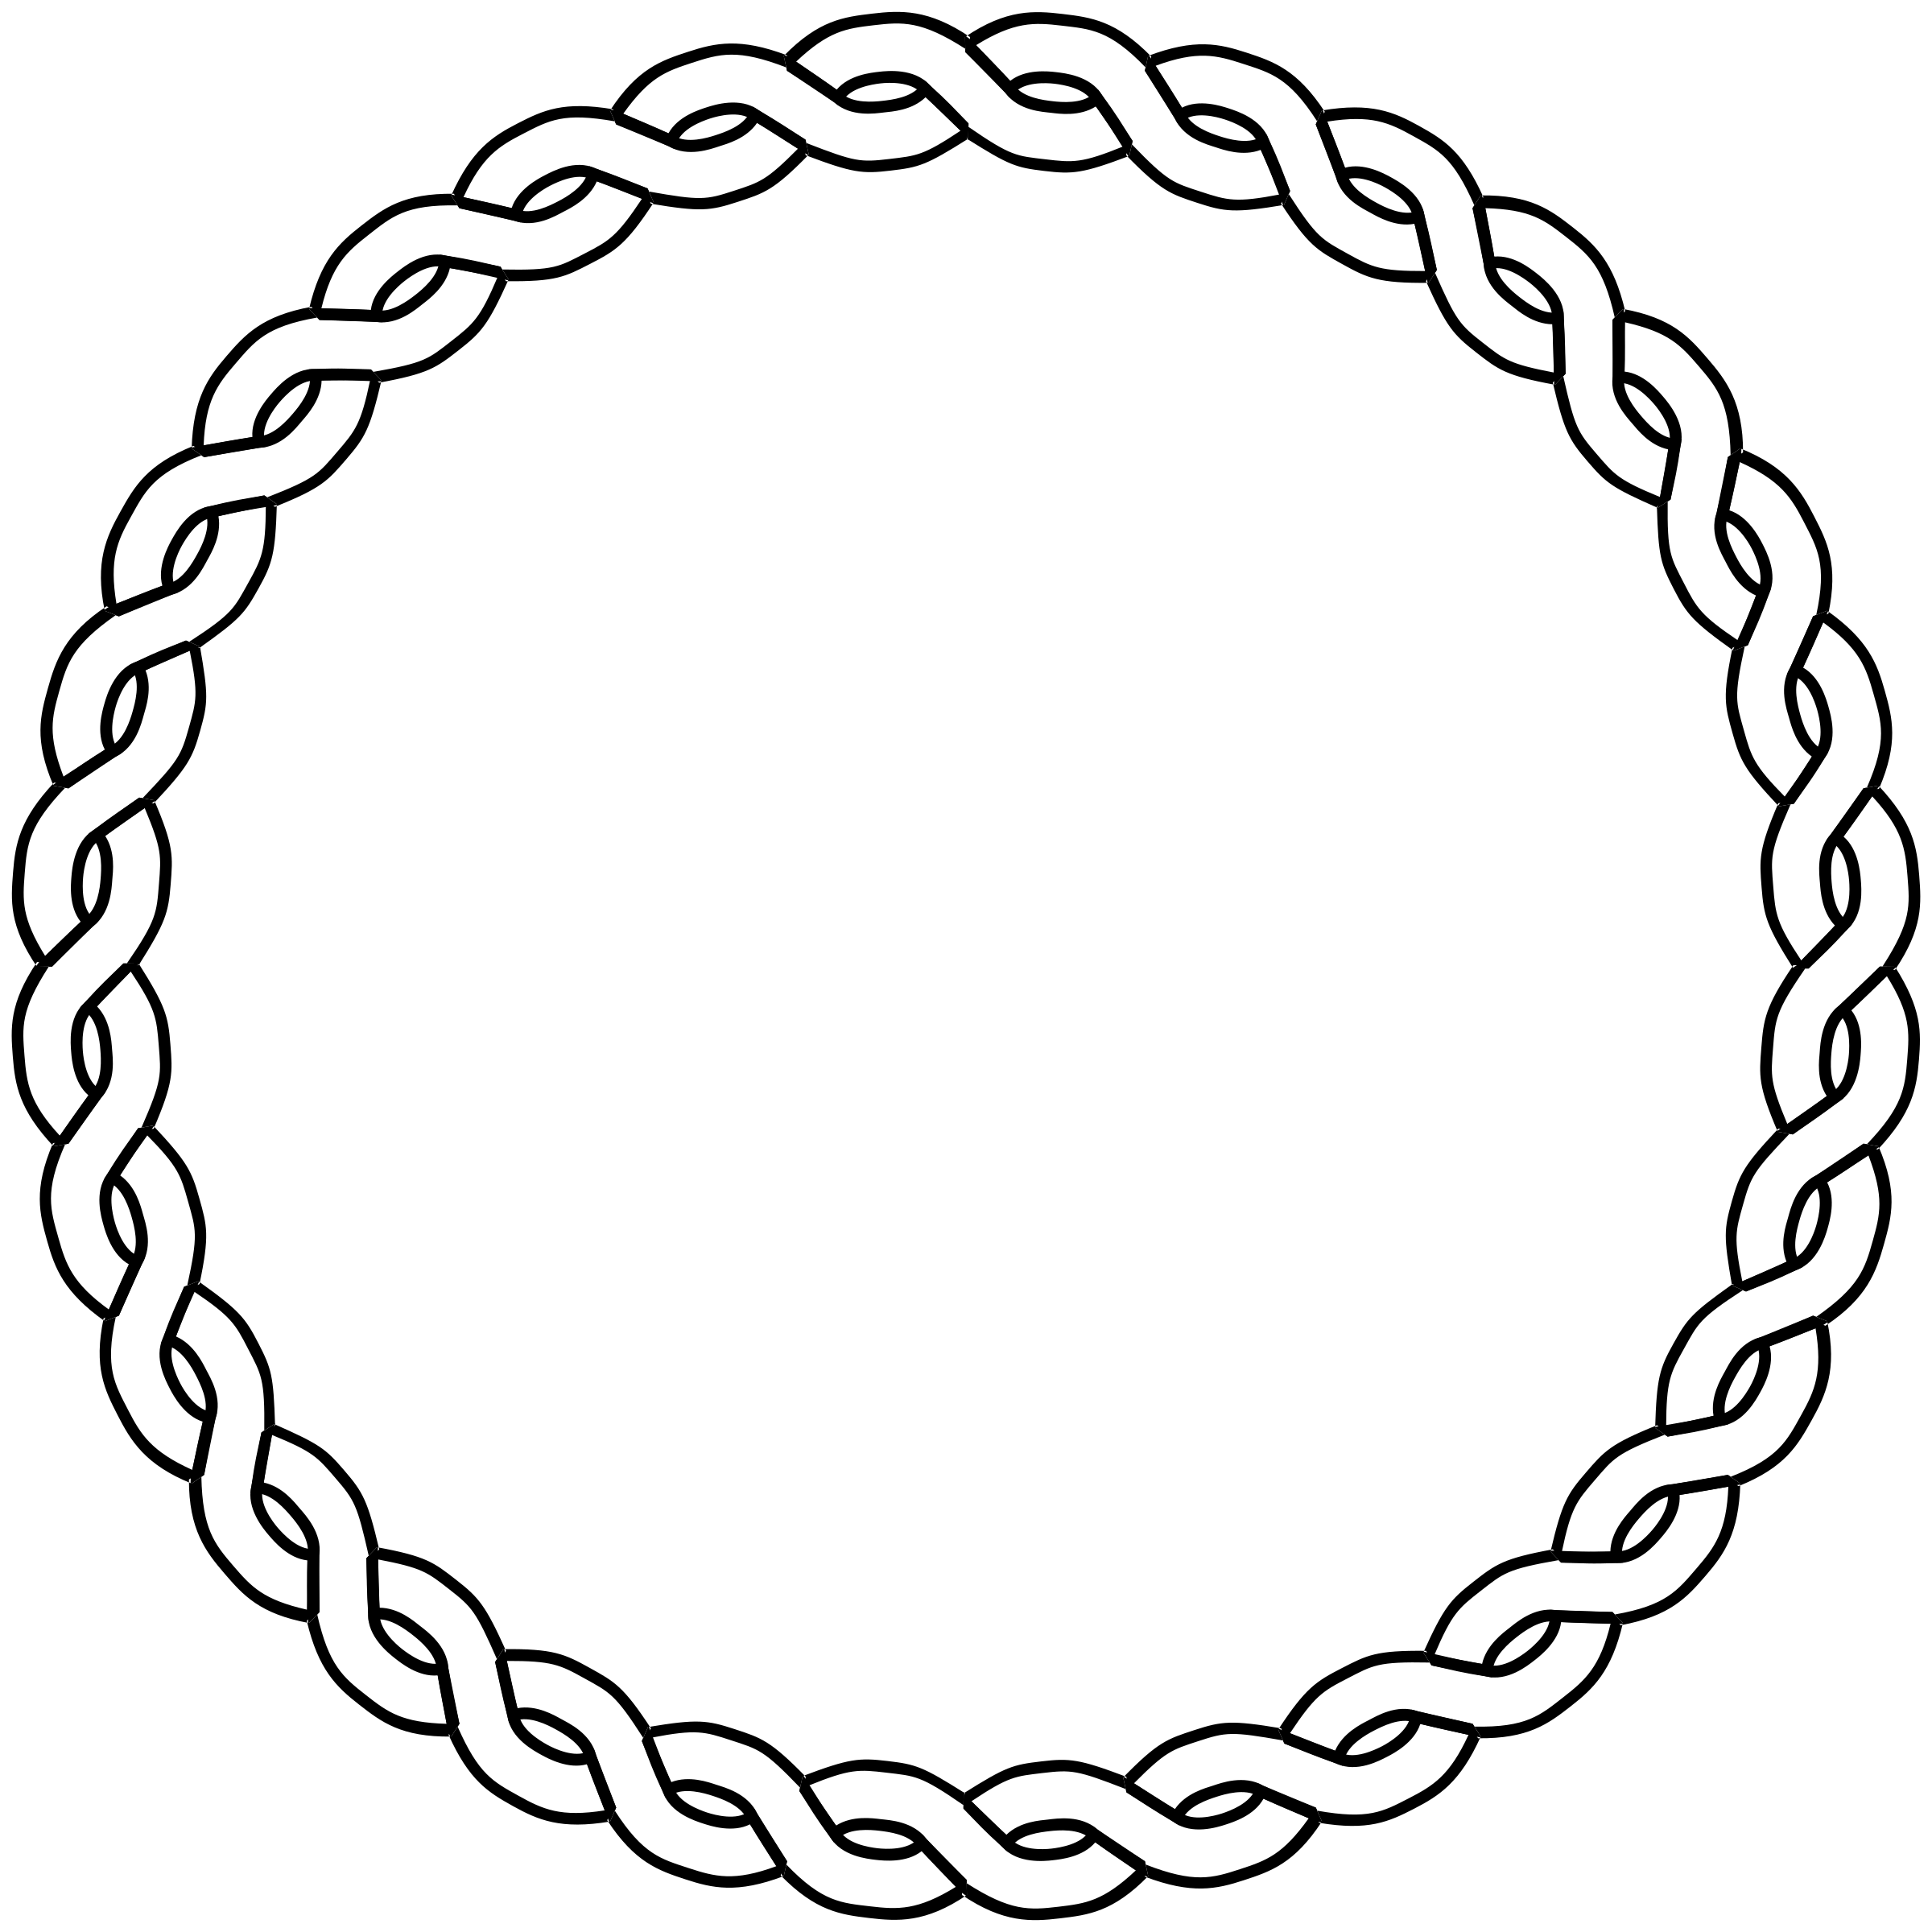 Clipart - rope border circle